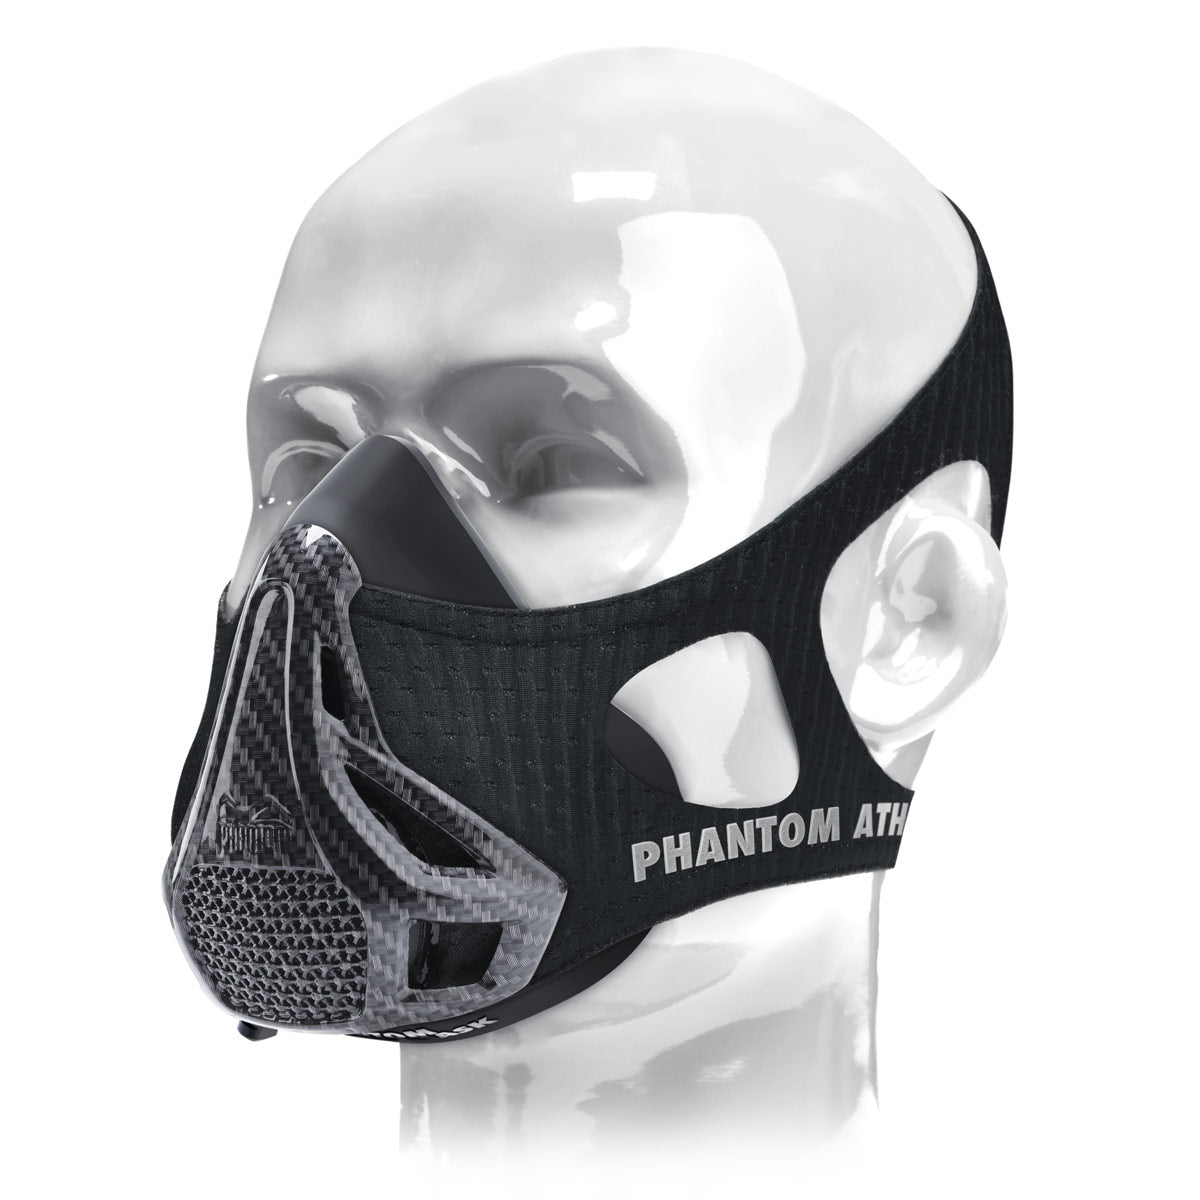 La máscara de entrenamiento Phantom . El original. Patentado y premiado para llevar tu fitness al siguiente nivel. Ahora en la edición limitada de carbono.